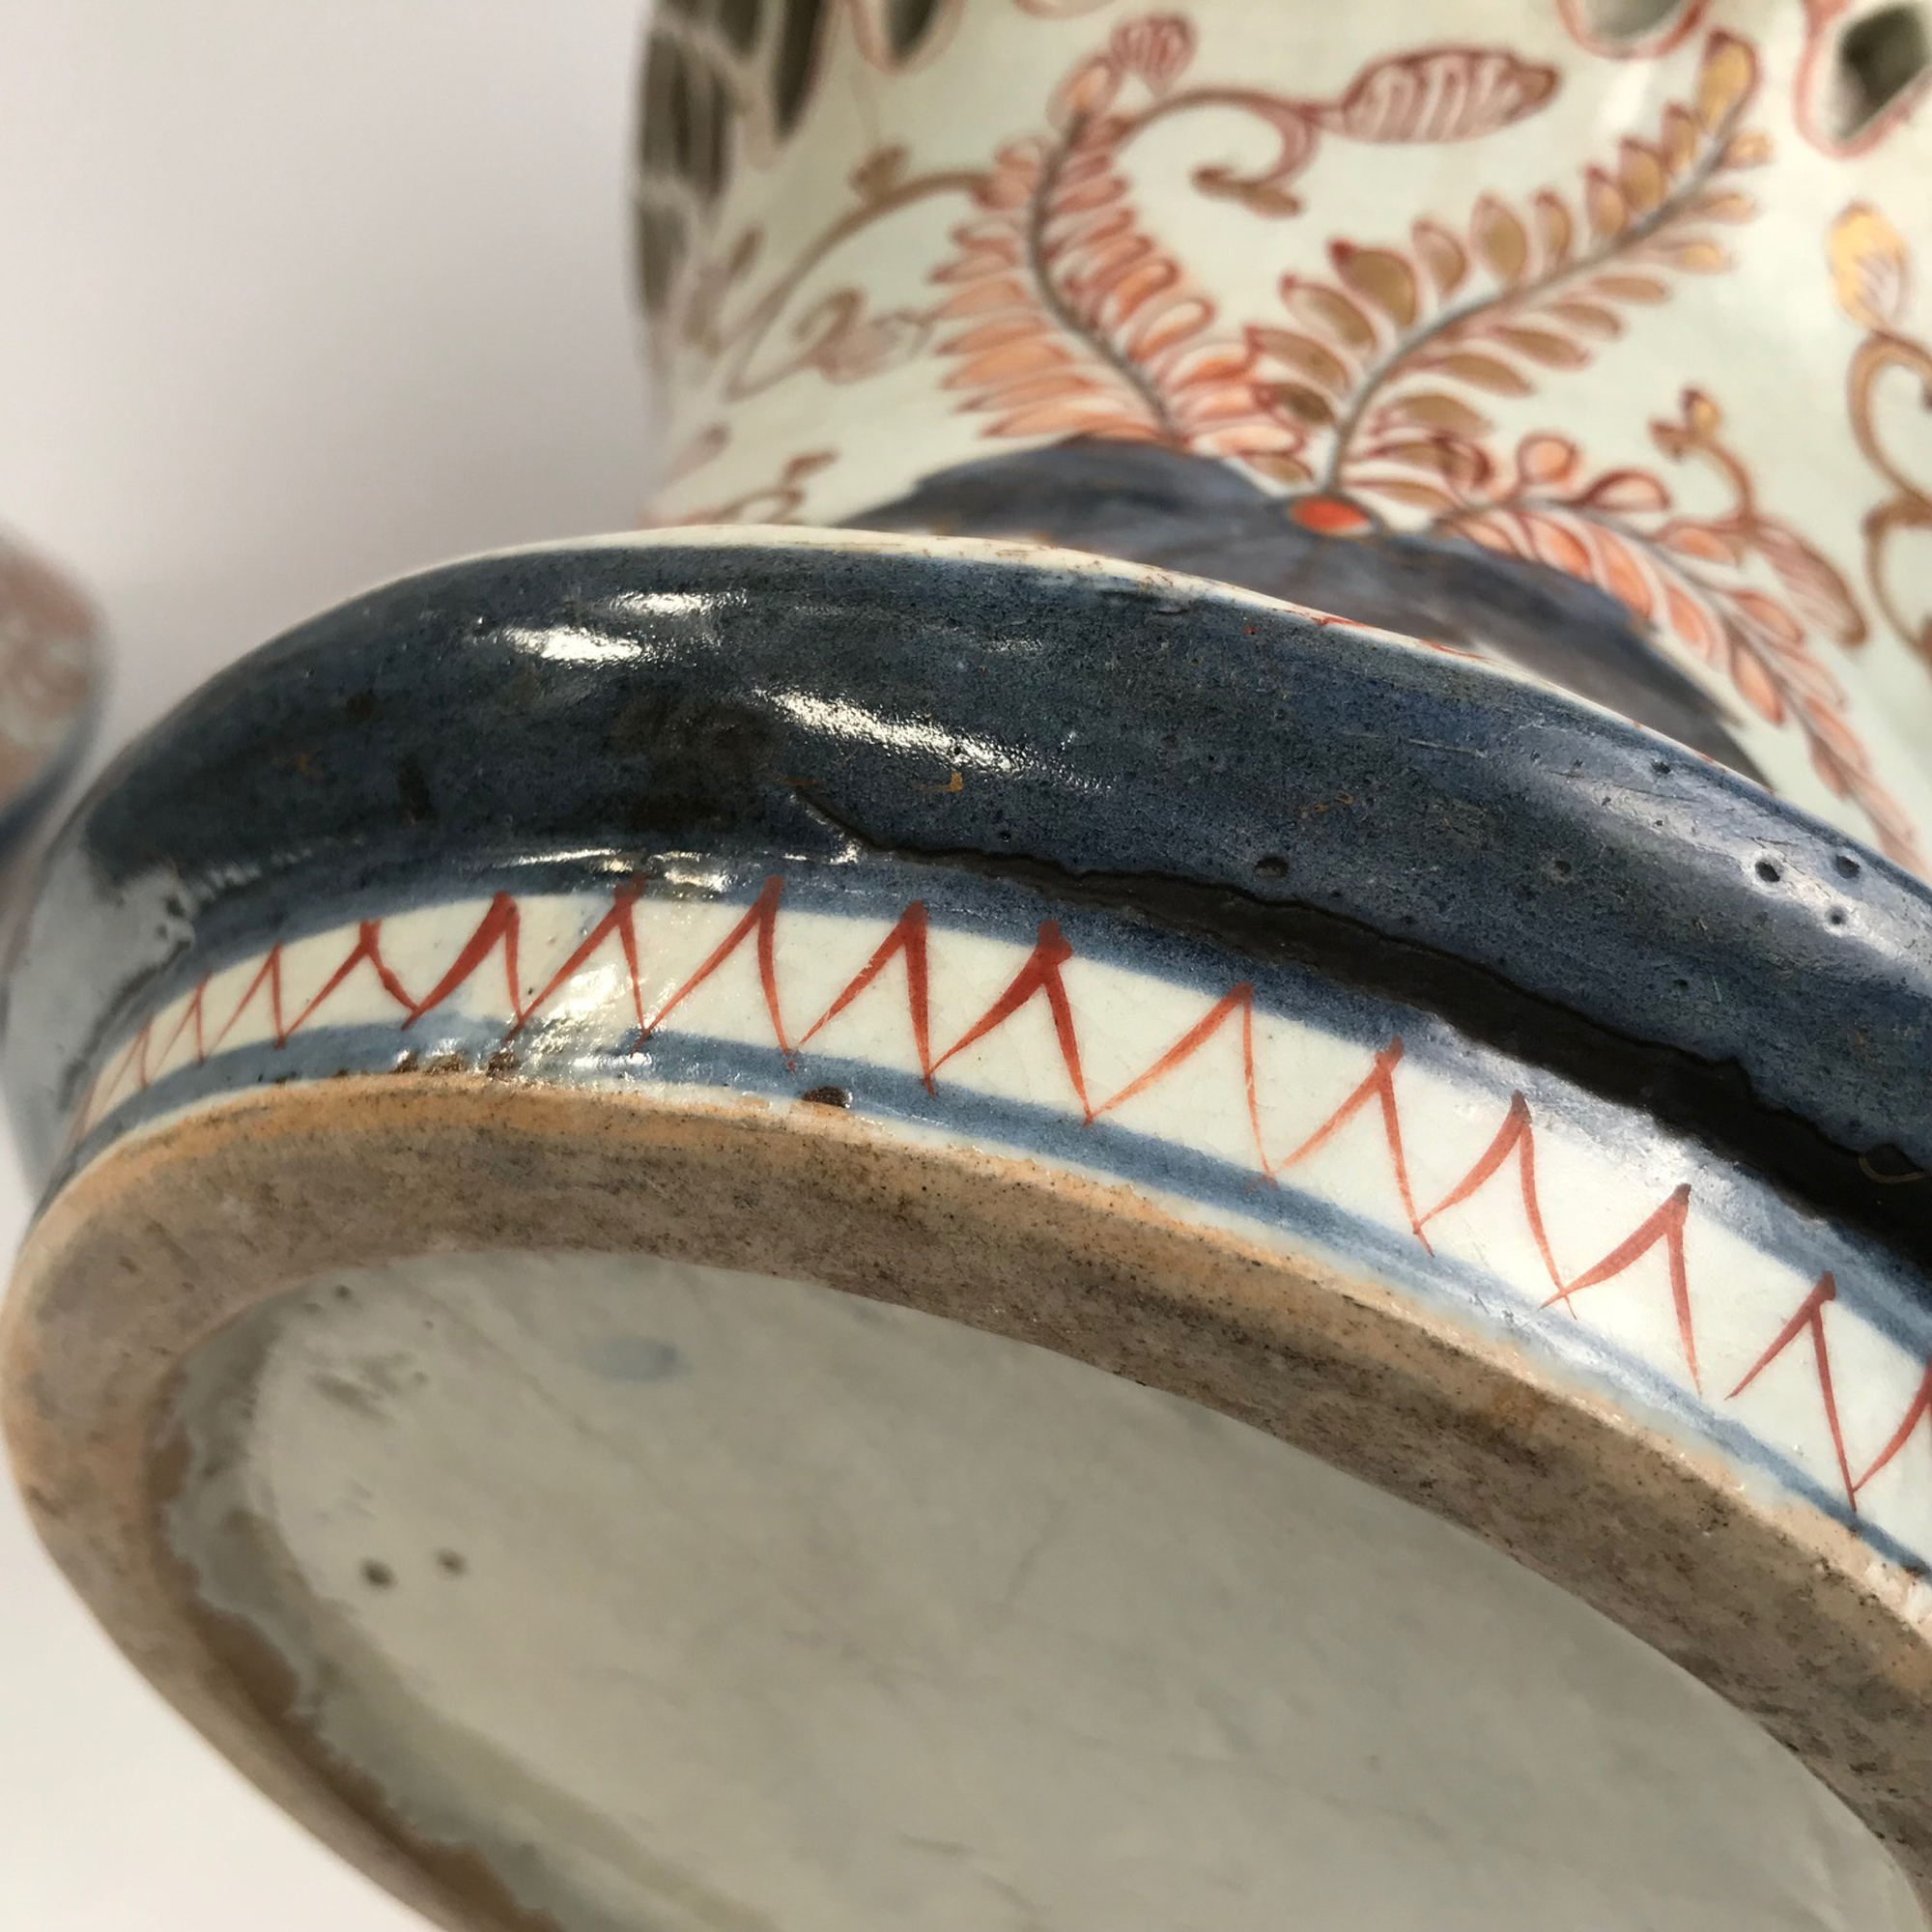 Vendu/Sold Paire de vases en porcelaine d'Arita, Japon époque Edo, circa 1664-1700